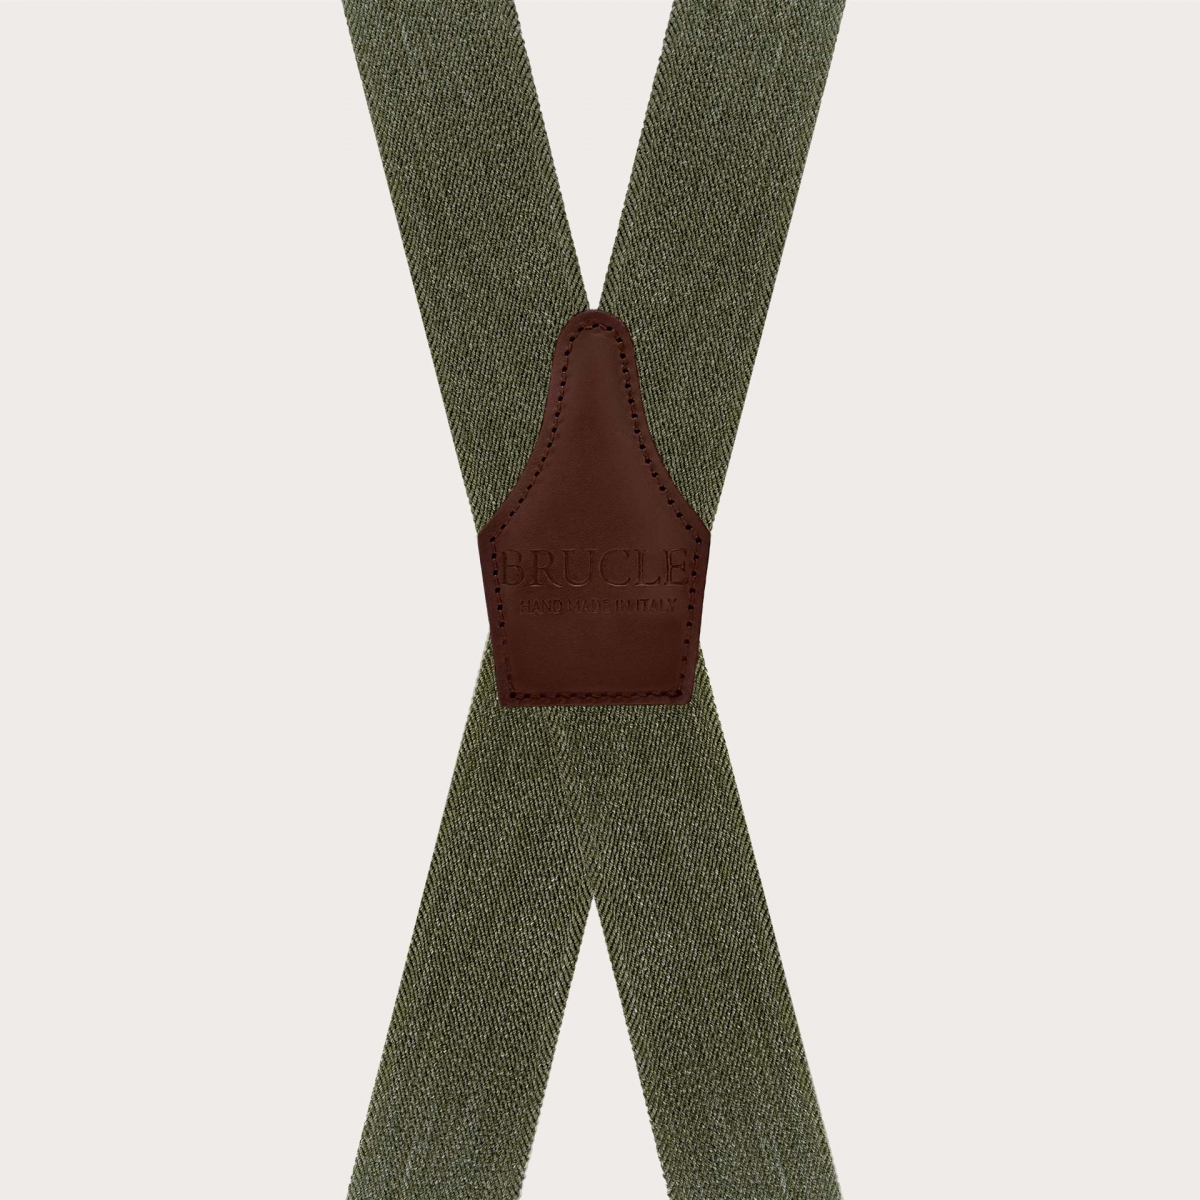 Bretelle verdi effetto jeans con forma a X solo clip